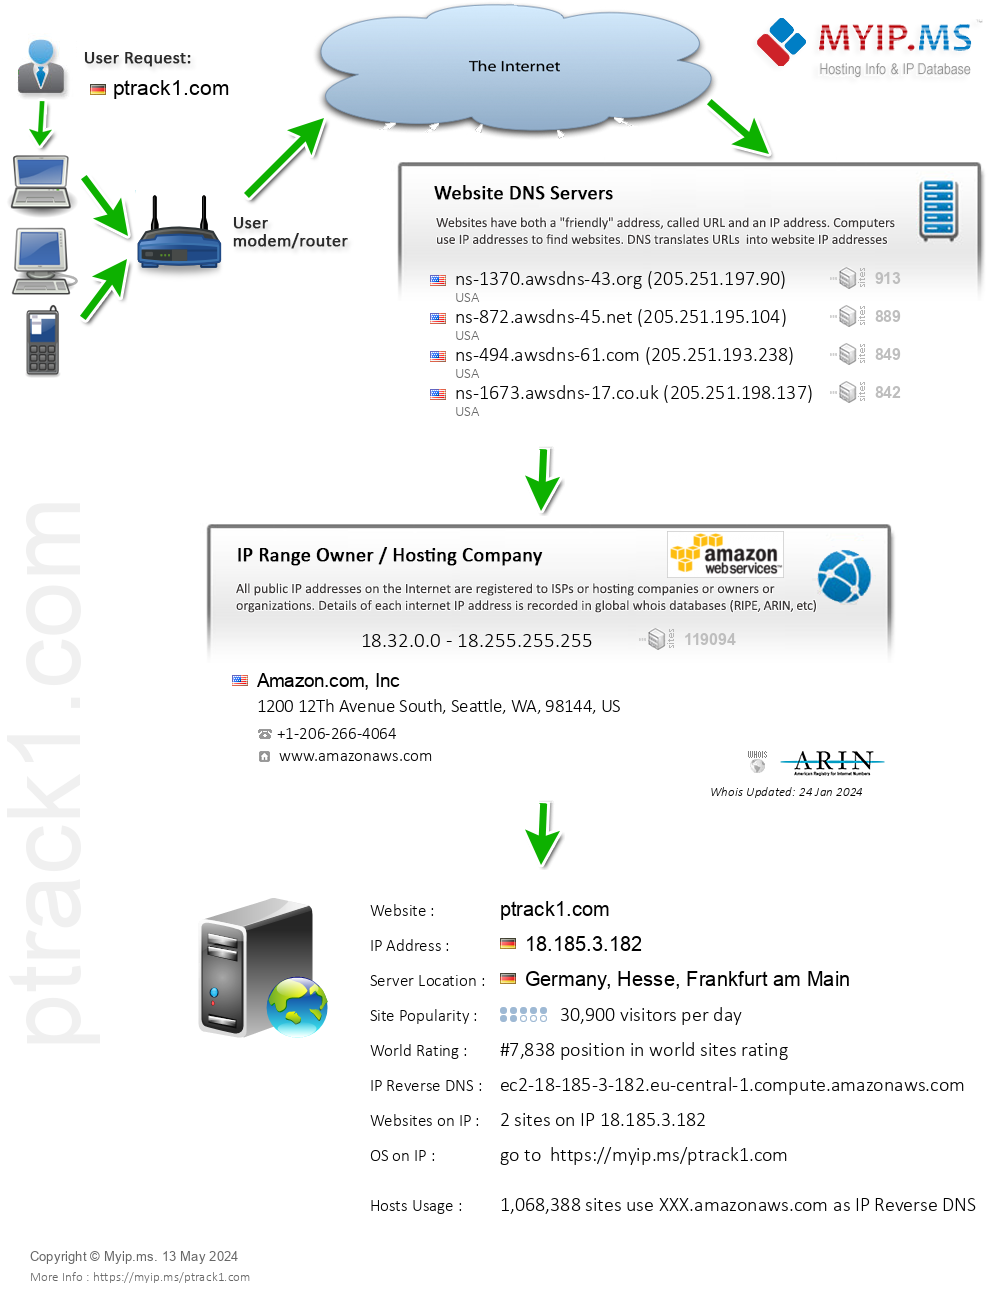 Ptrack1.com - Website Hosting Visual IP Diagram